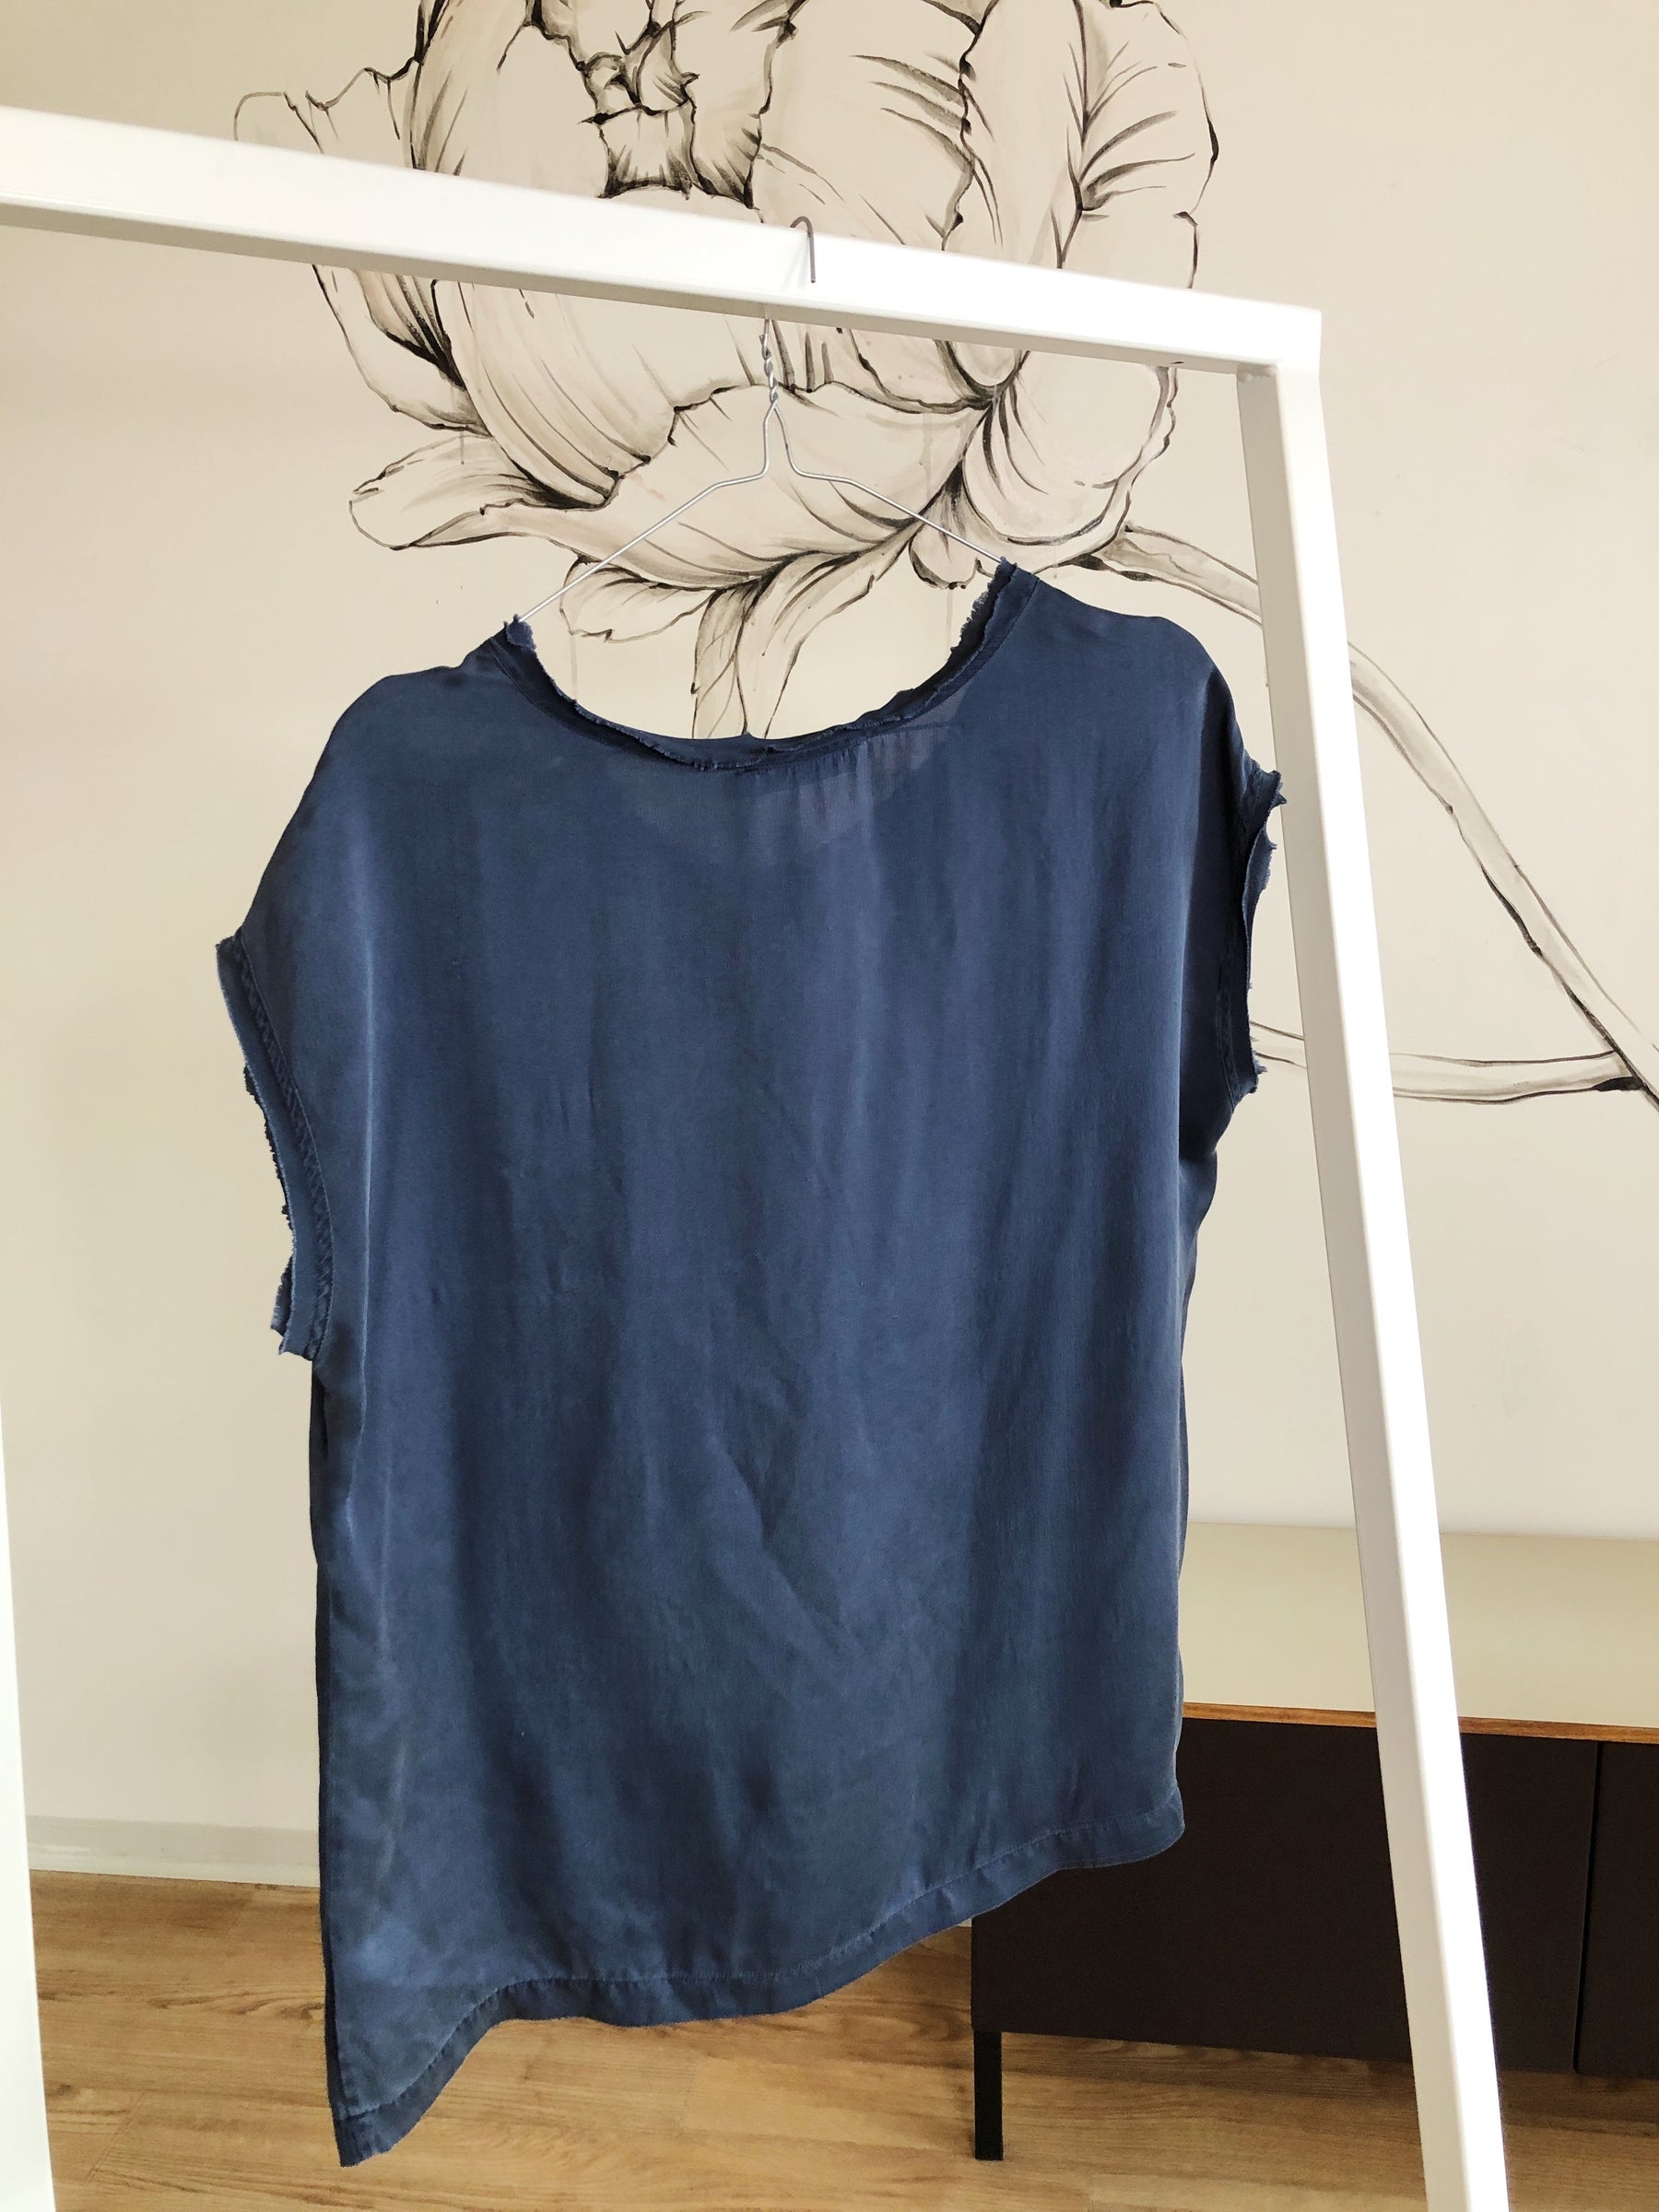 Artigiano silke tshirt